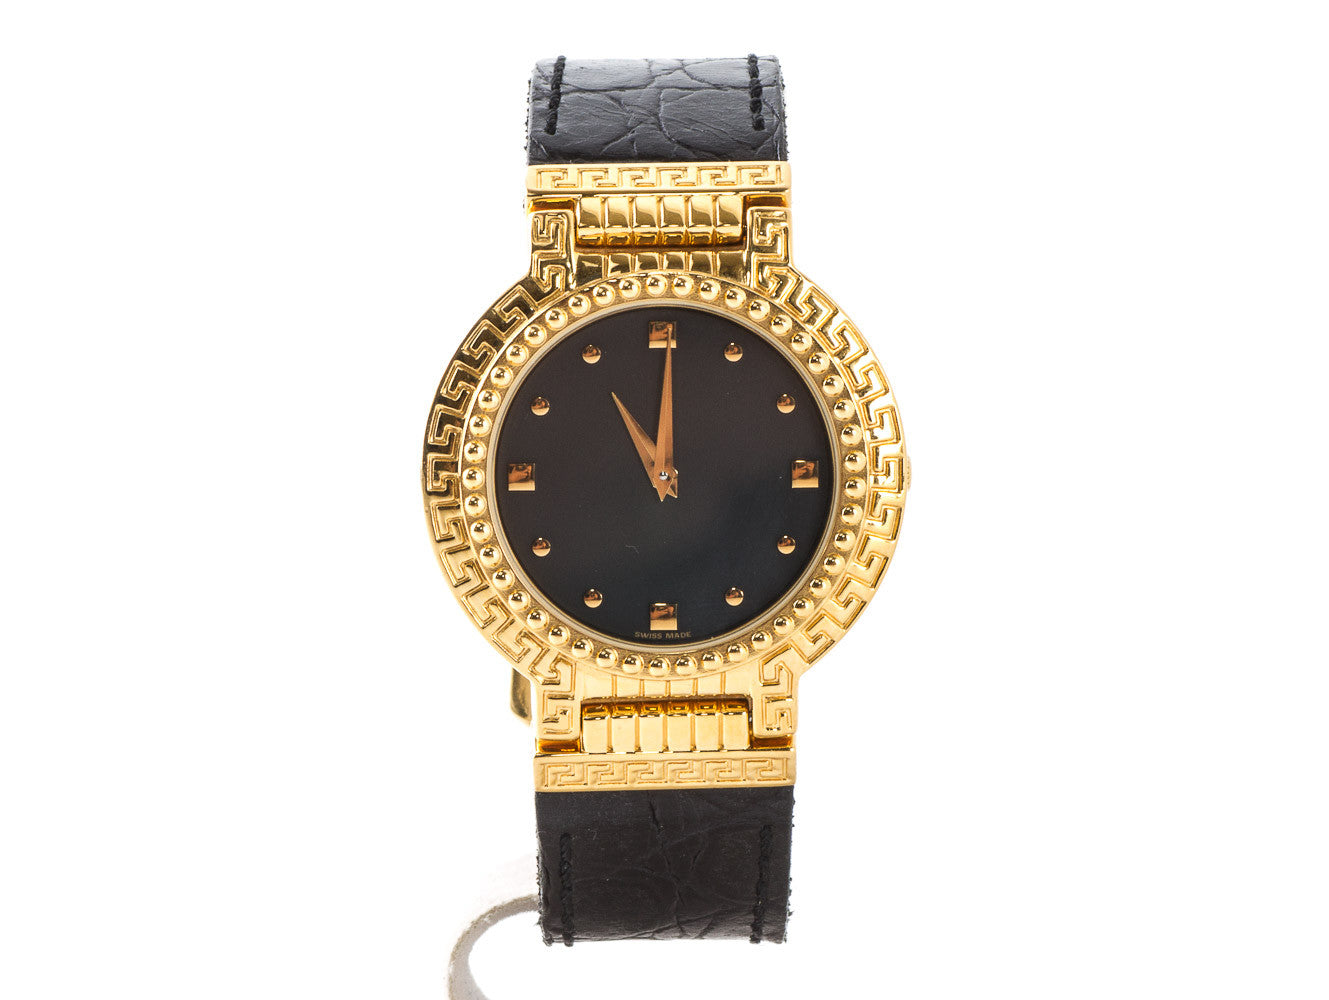 Authentic Gianni Versace vintage medusa Gold plated quartz watch + box - Connect Japan Luxury - 1